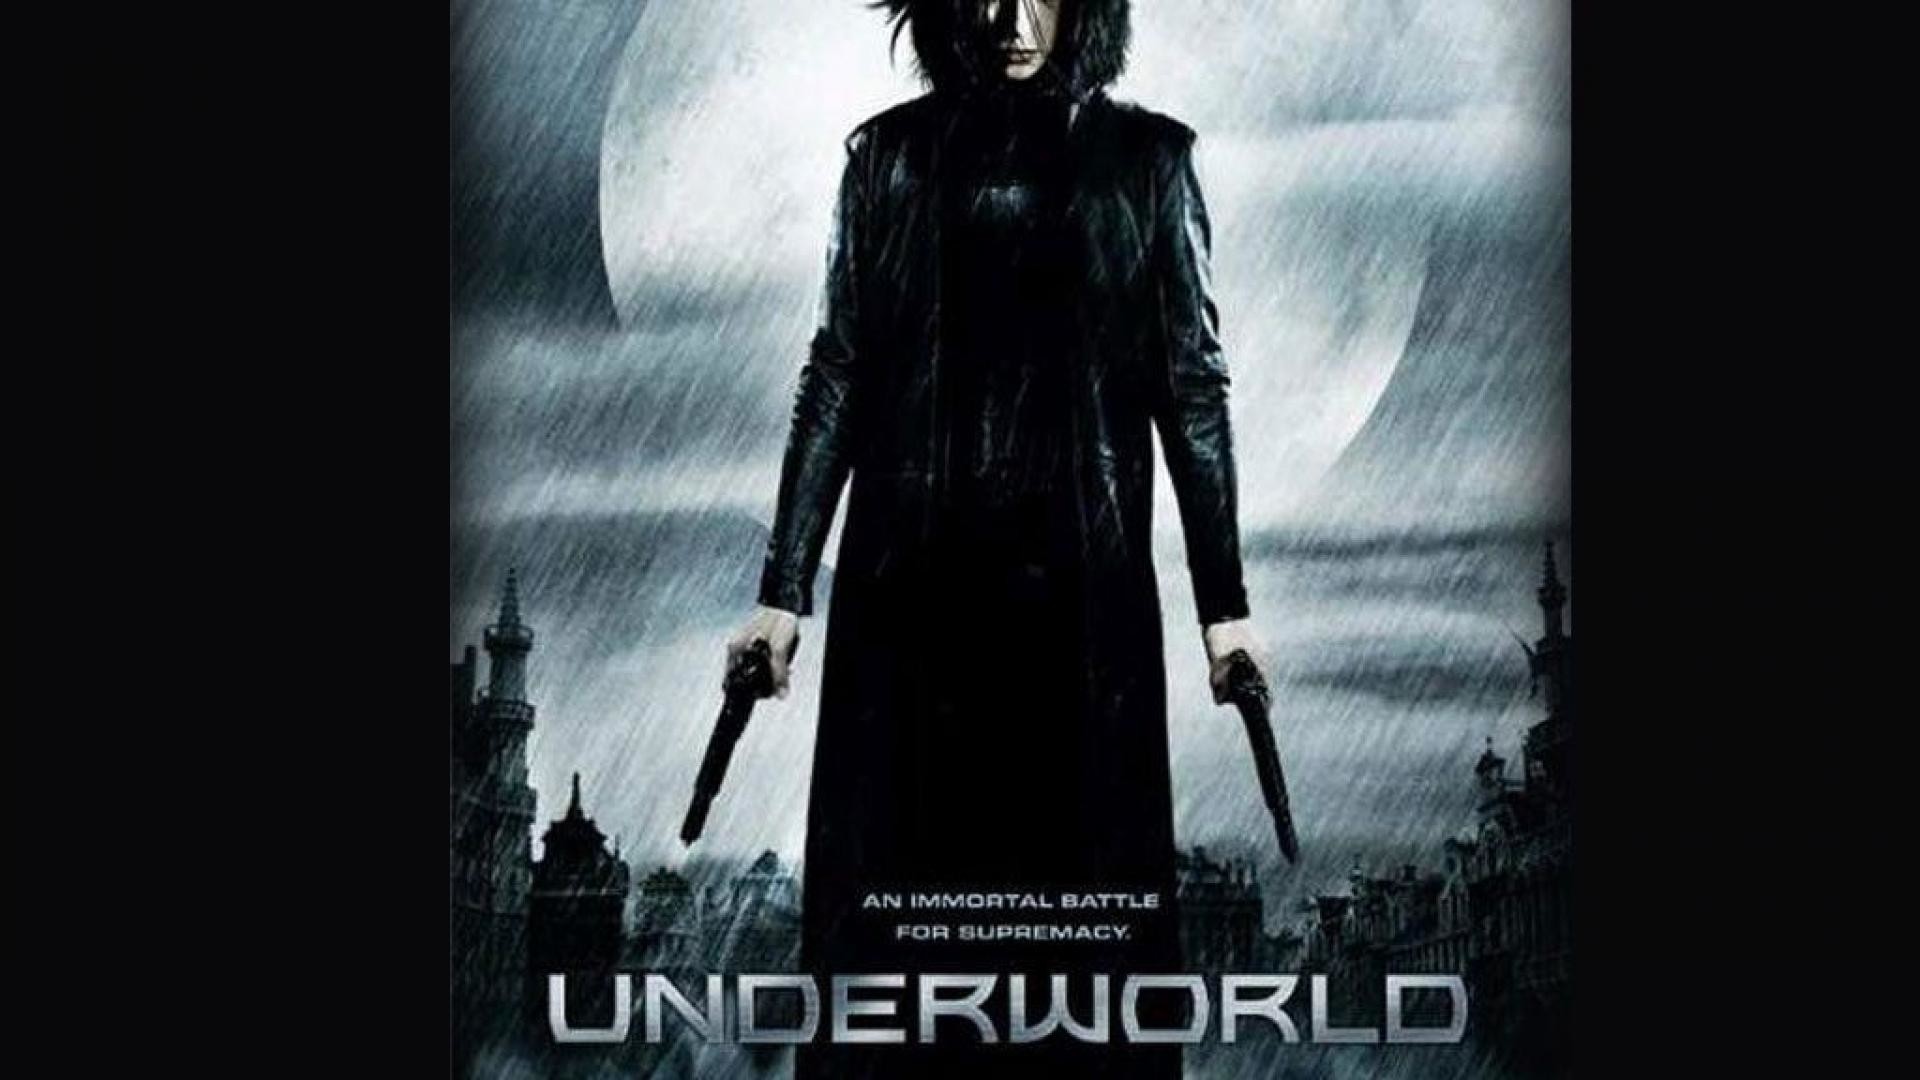 Selene Underworld Evolution Rise Of The Lycans Awakening - Underworld 2003 Movie Poster , HD Wallpaper & Backgrounds